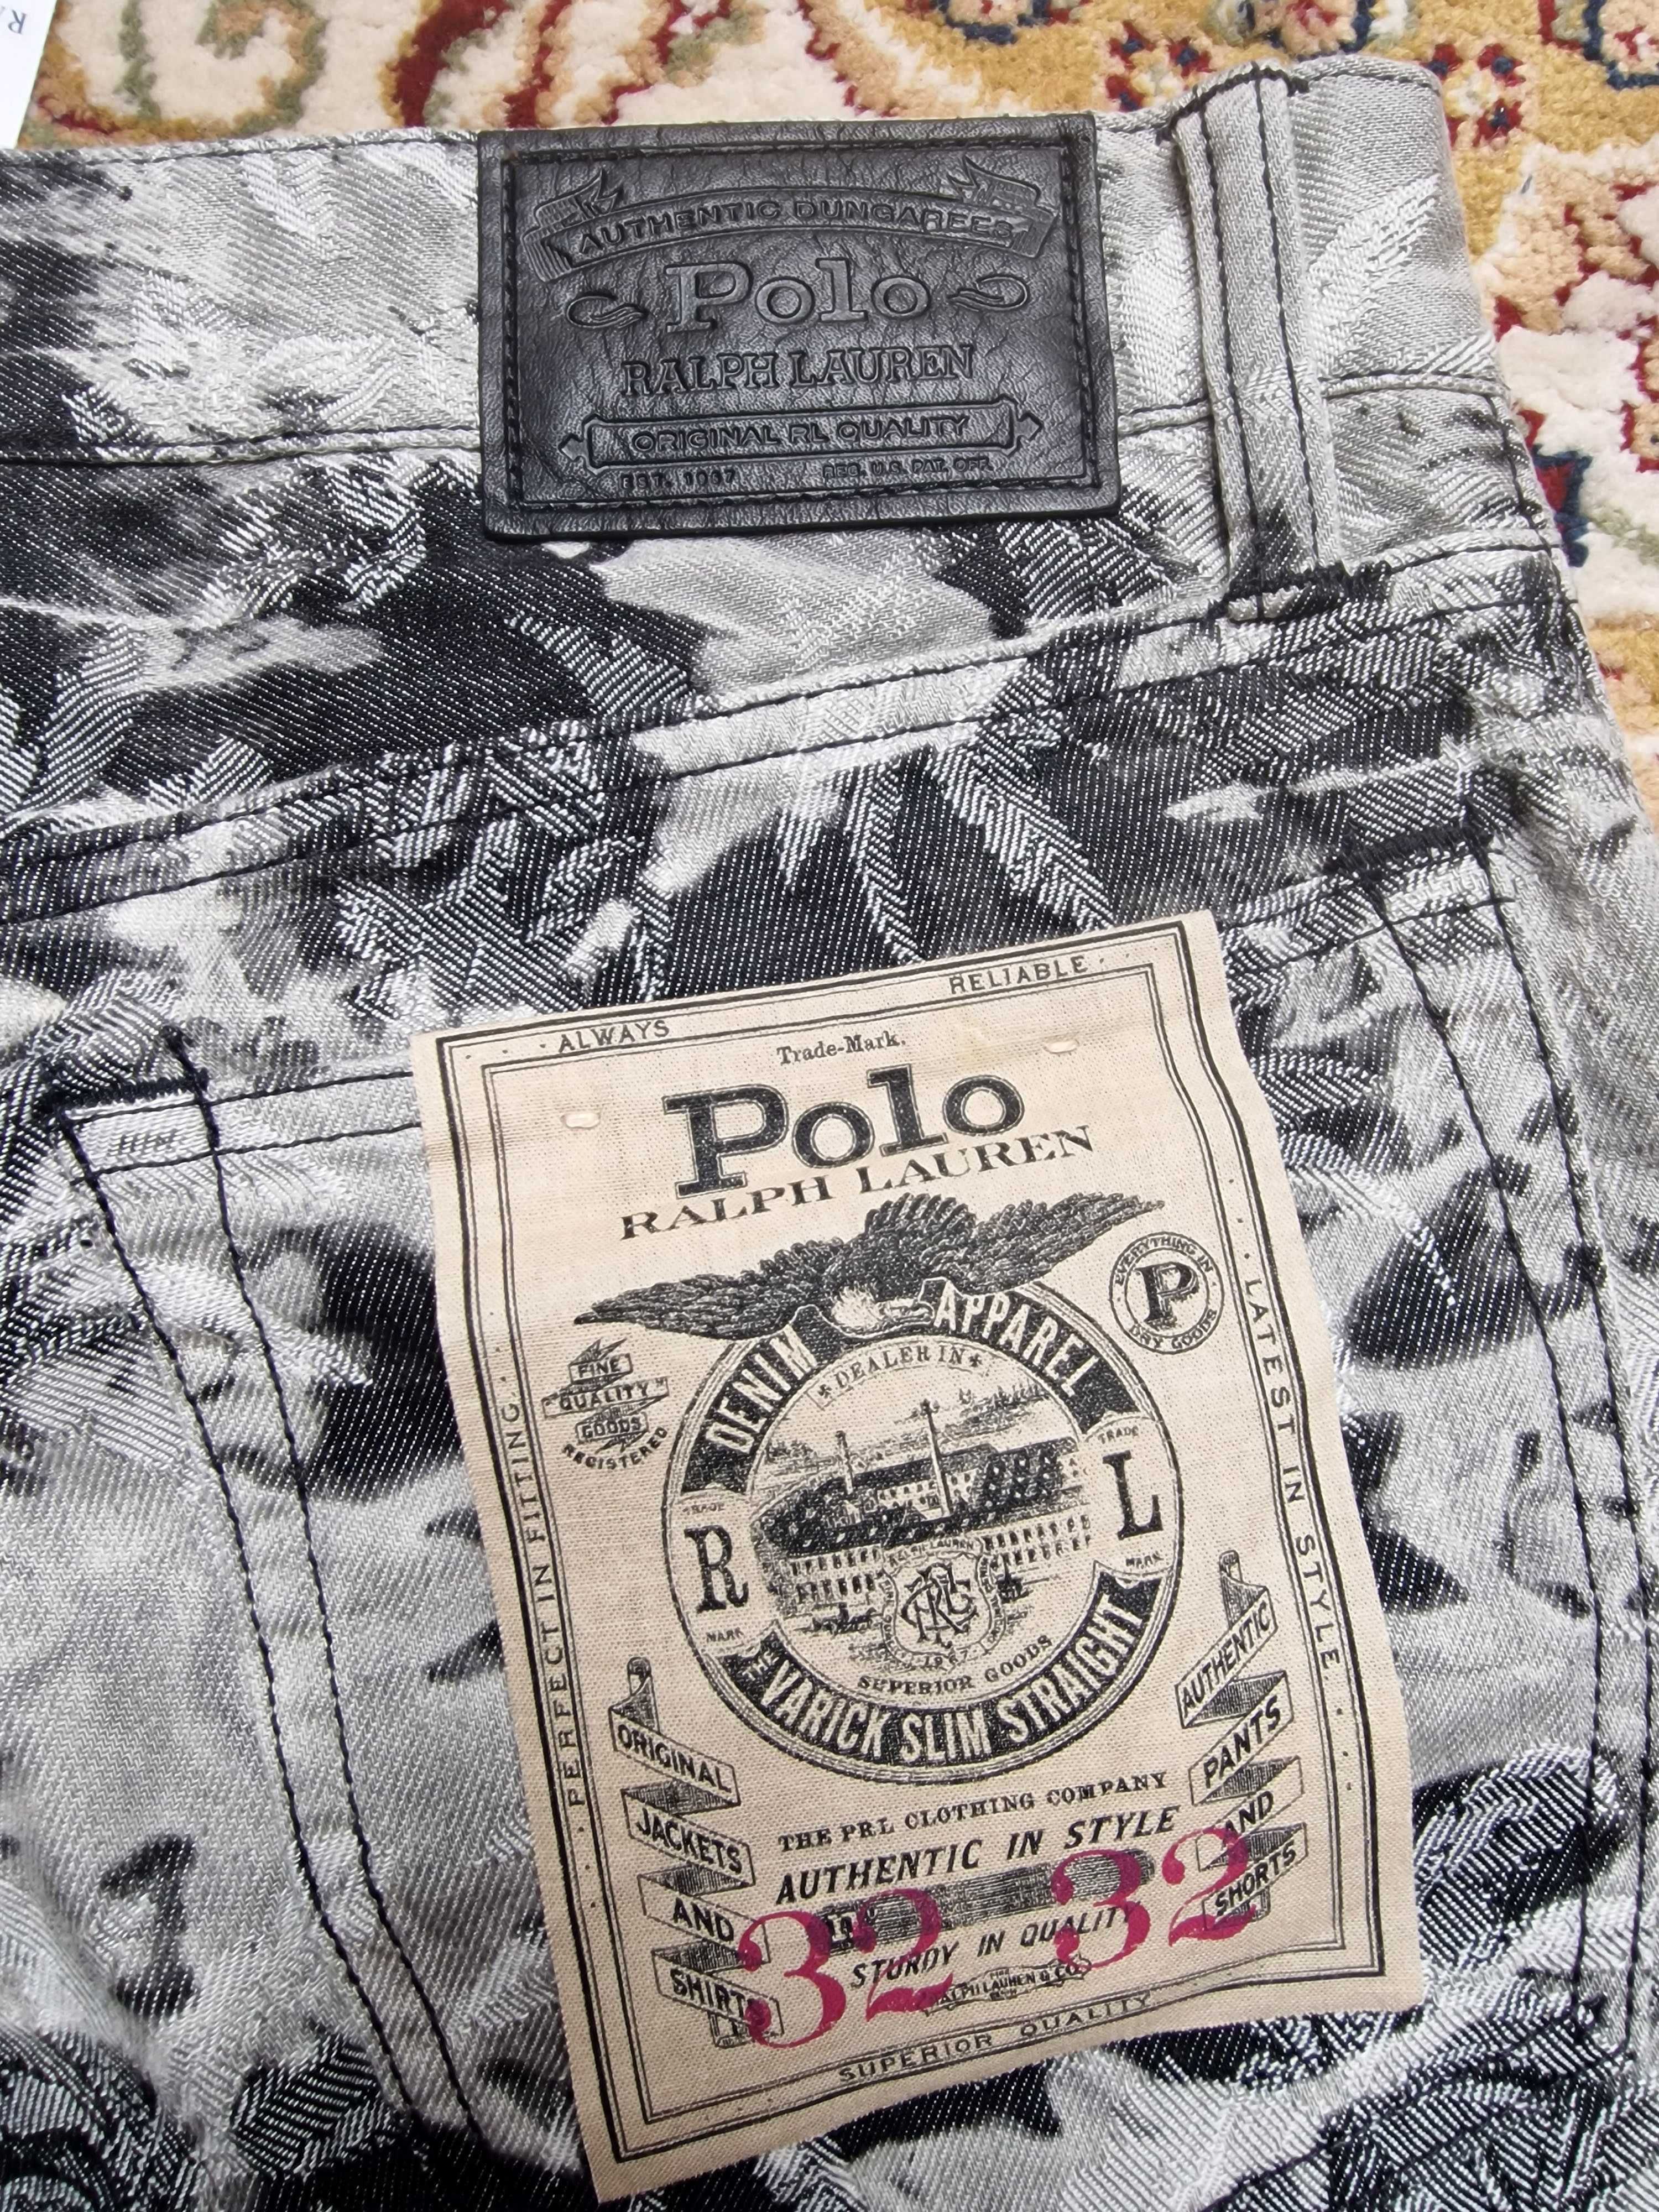 NOWE spodnie Polo Ralph Lauren M ciekawe jedyne takie na OLX 200zł